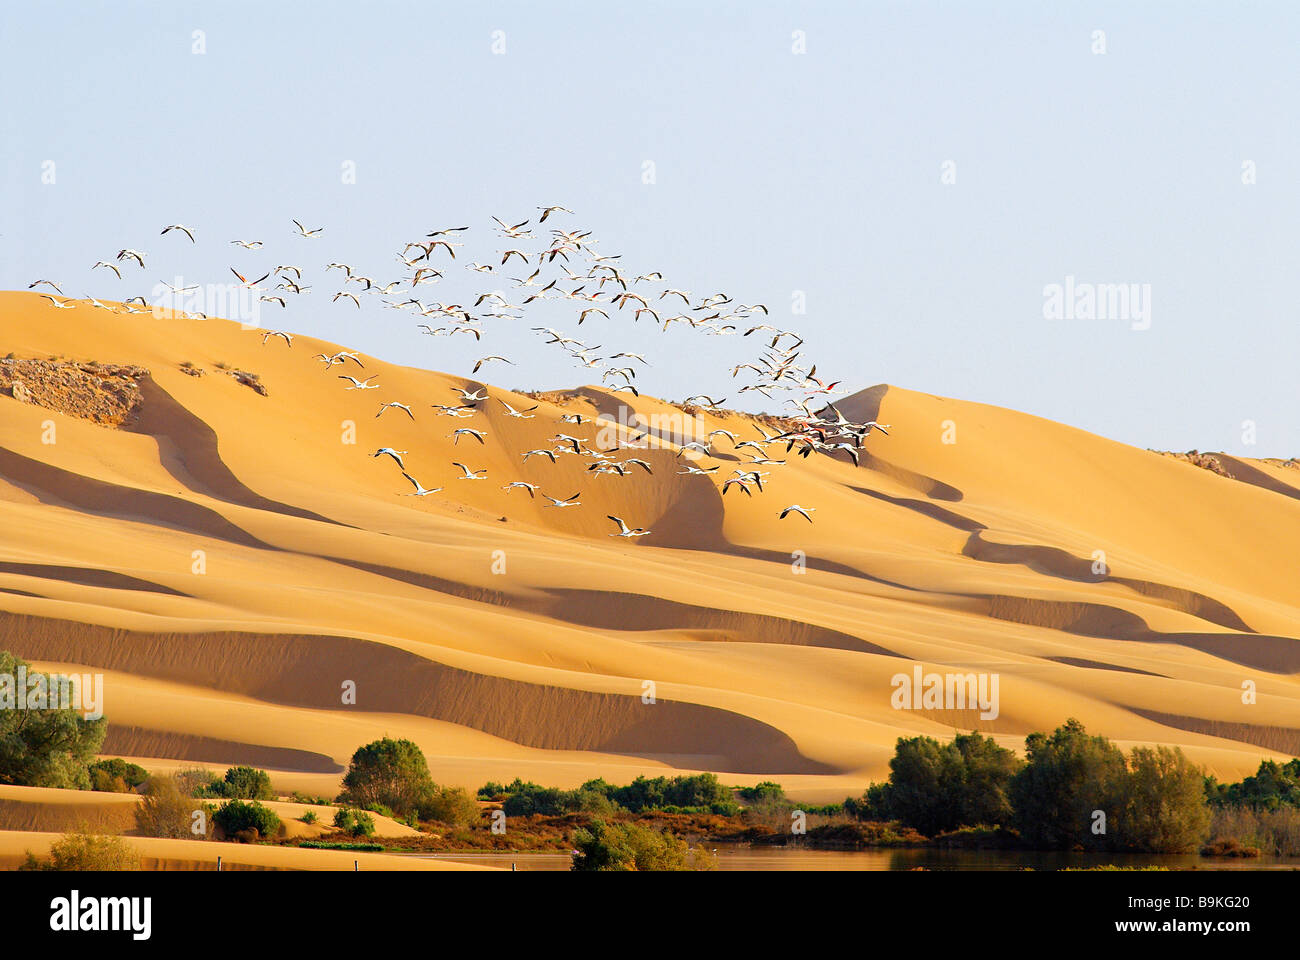 Le Maroc, dans le sud du Maroc, région de Laayoune, désert et laguna, les oiseaux migrateurs, des flamants roses (ancien Sahara espagnol) Banque D'Images